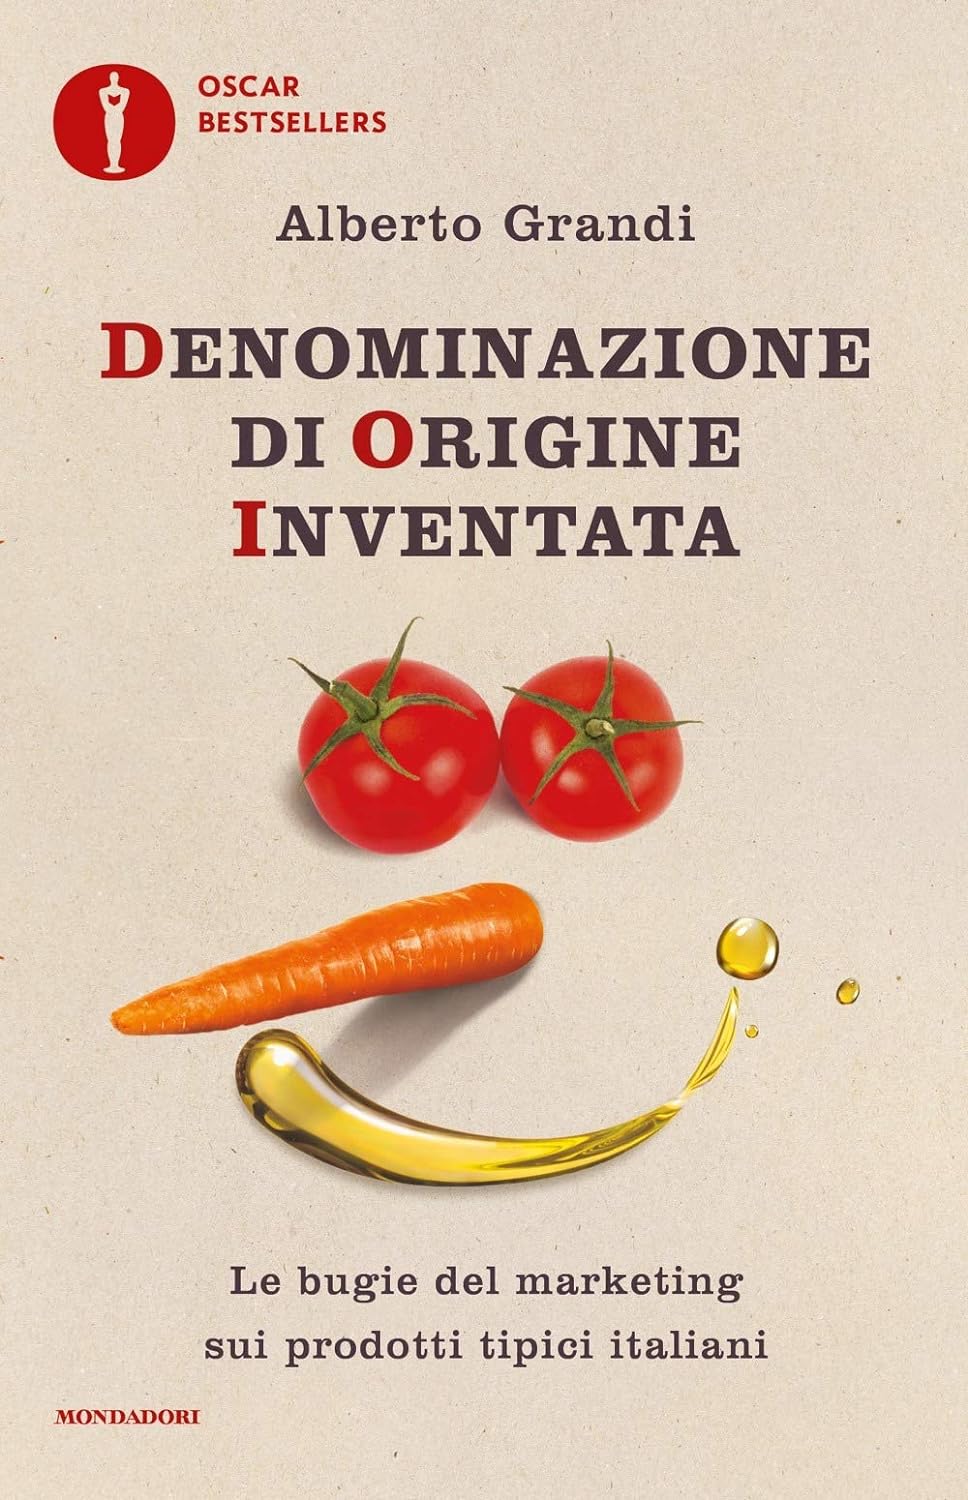 Alberto Grandi: Denominazione di origine inventata (Hardcover, 2018, Mondadori)